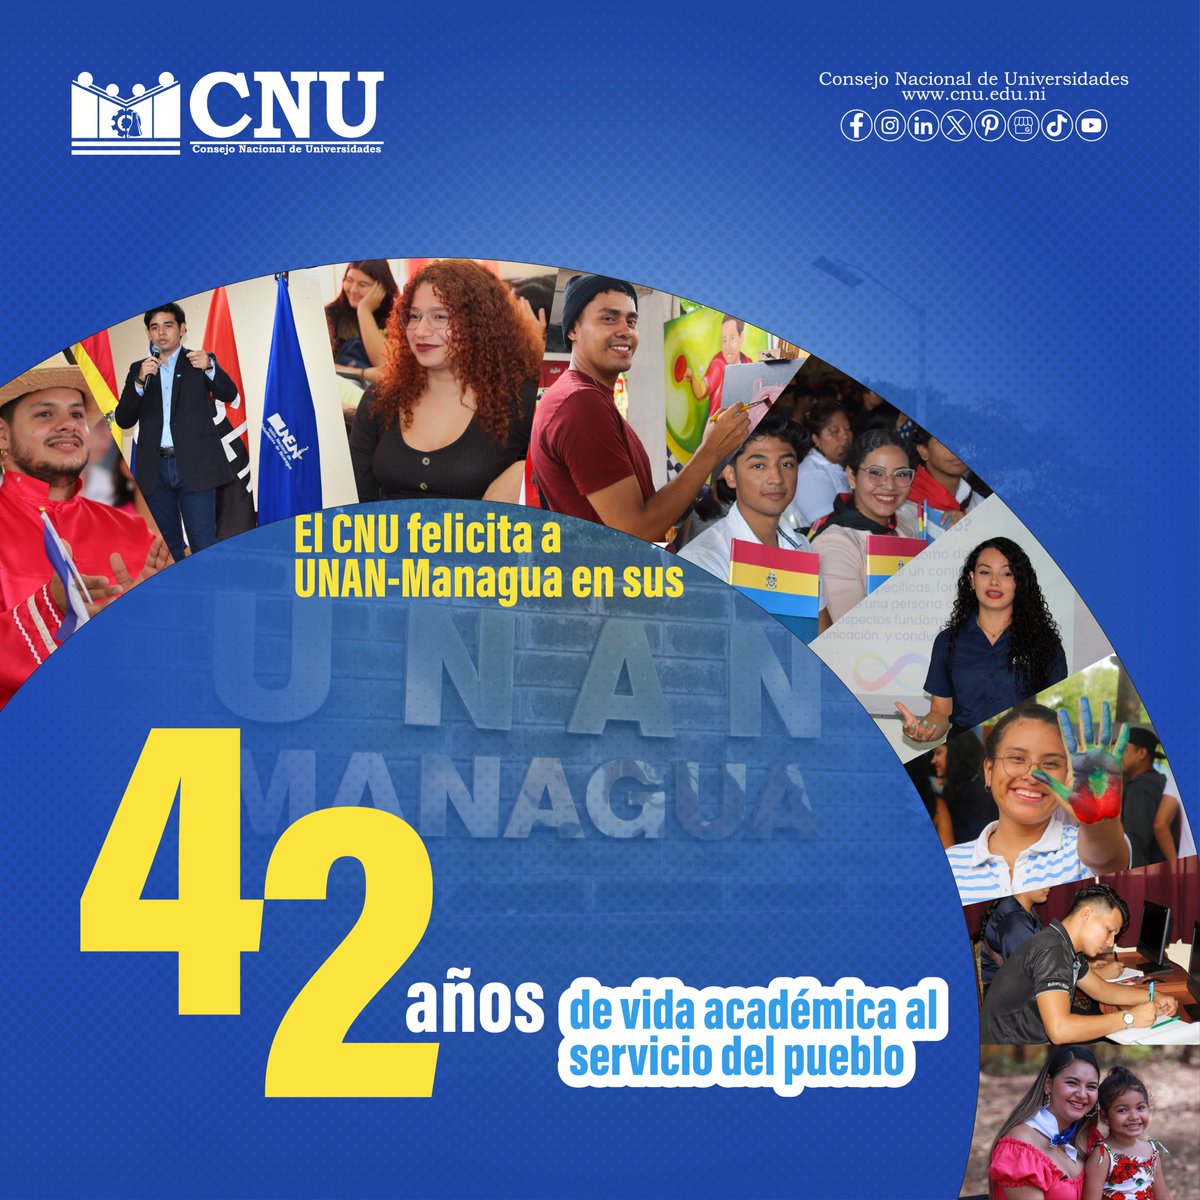 #ANIVERSARIO || 📝📑📅 Felicitamos a la UNAN-Managua por sus 42 años de vida académica al servicio del pueblo nicaragüense. . . . #Nicaragua #CNU #CalidadEducativa